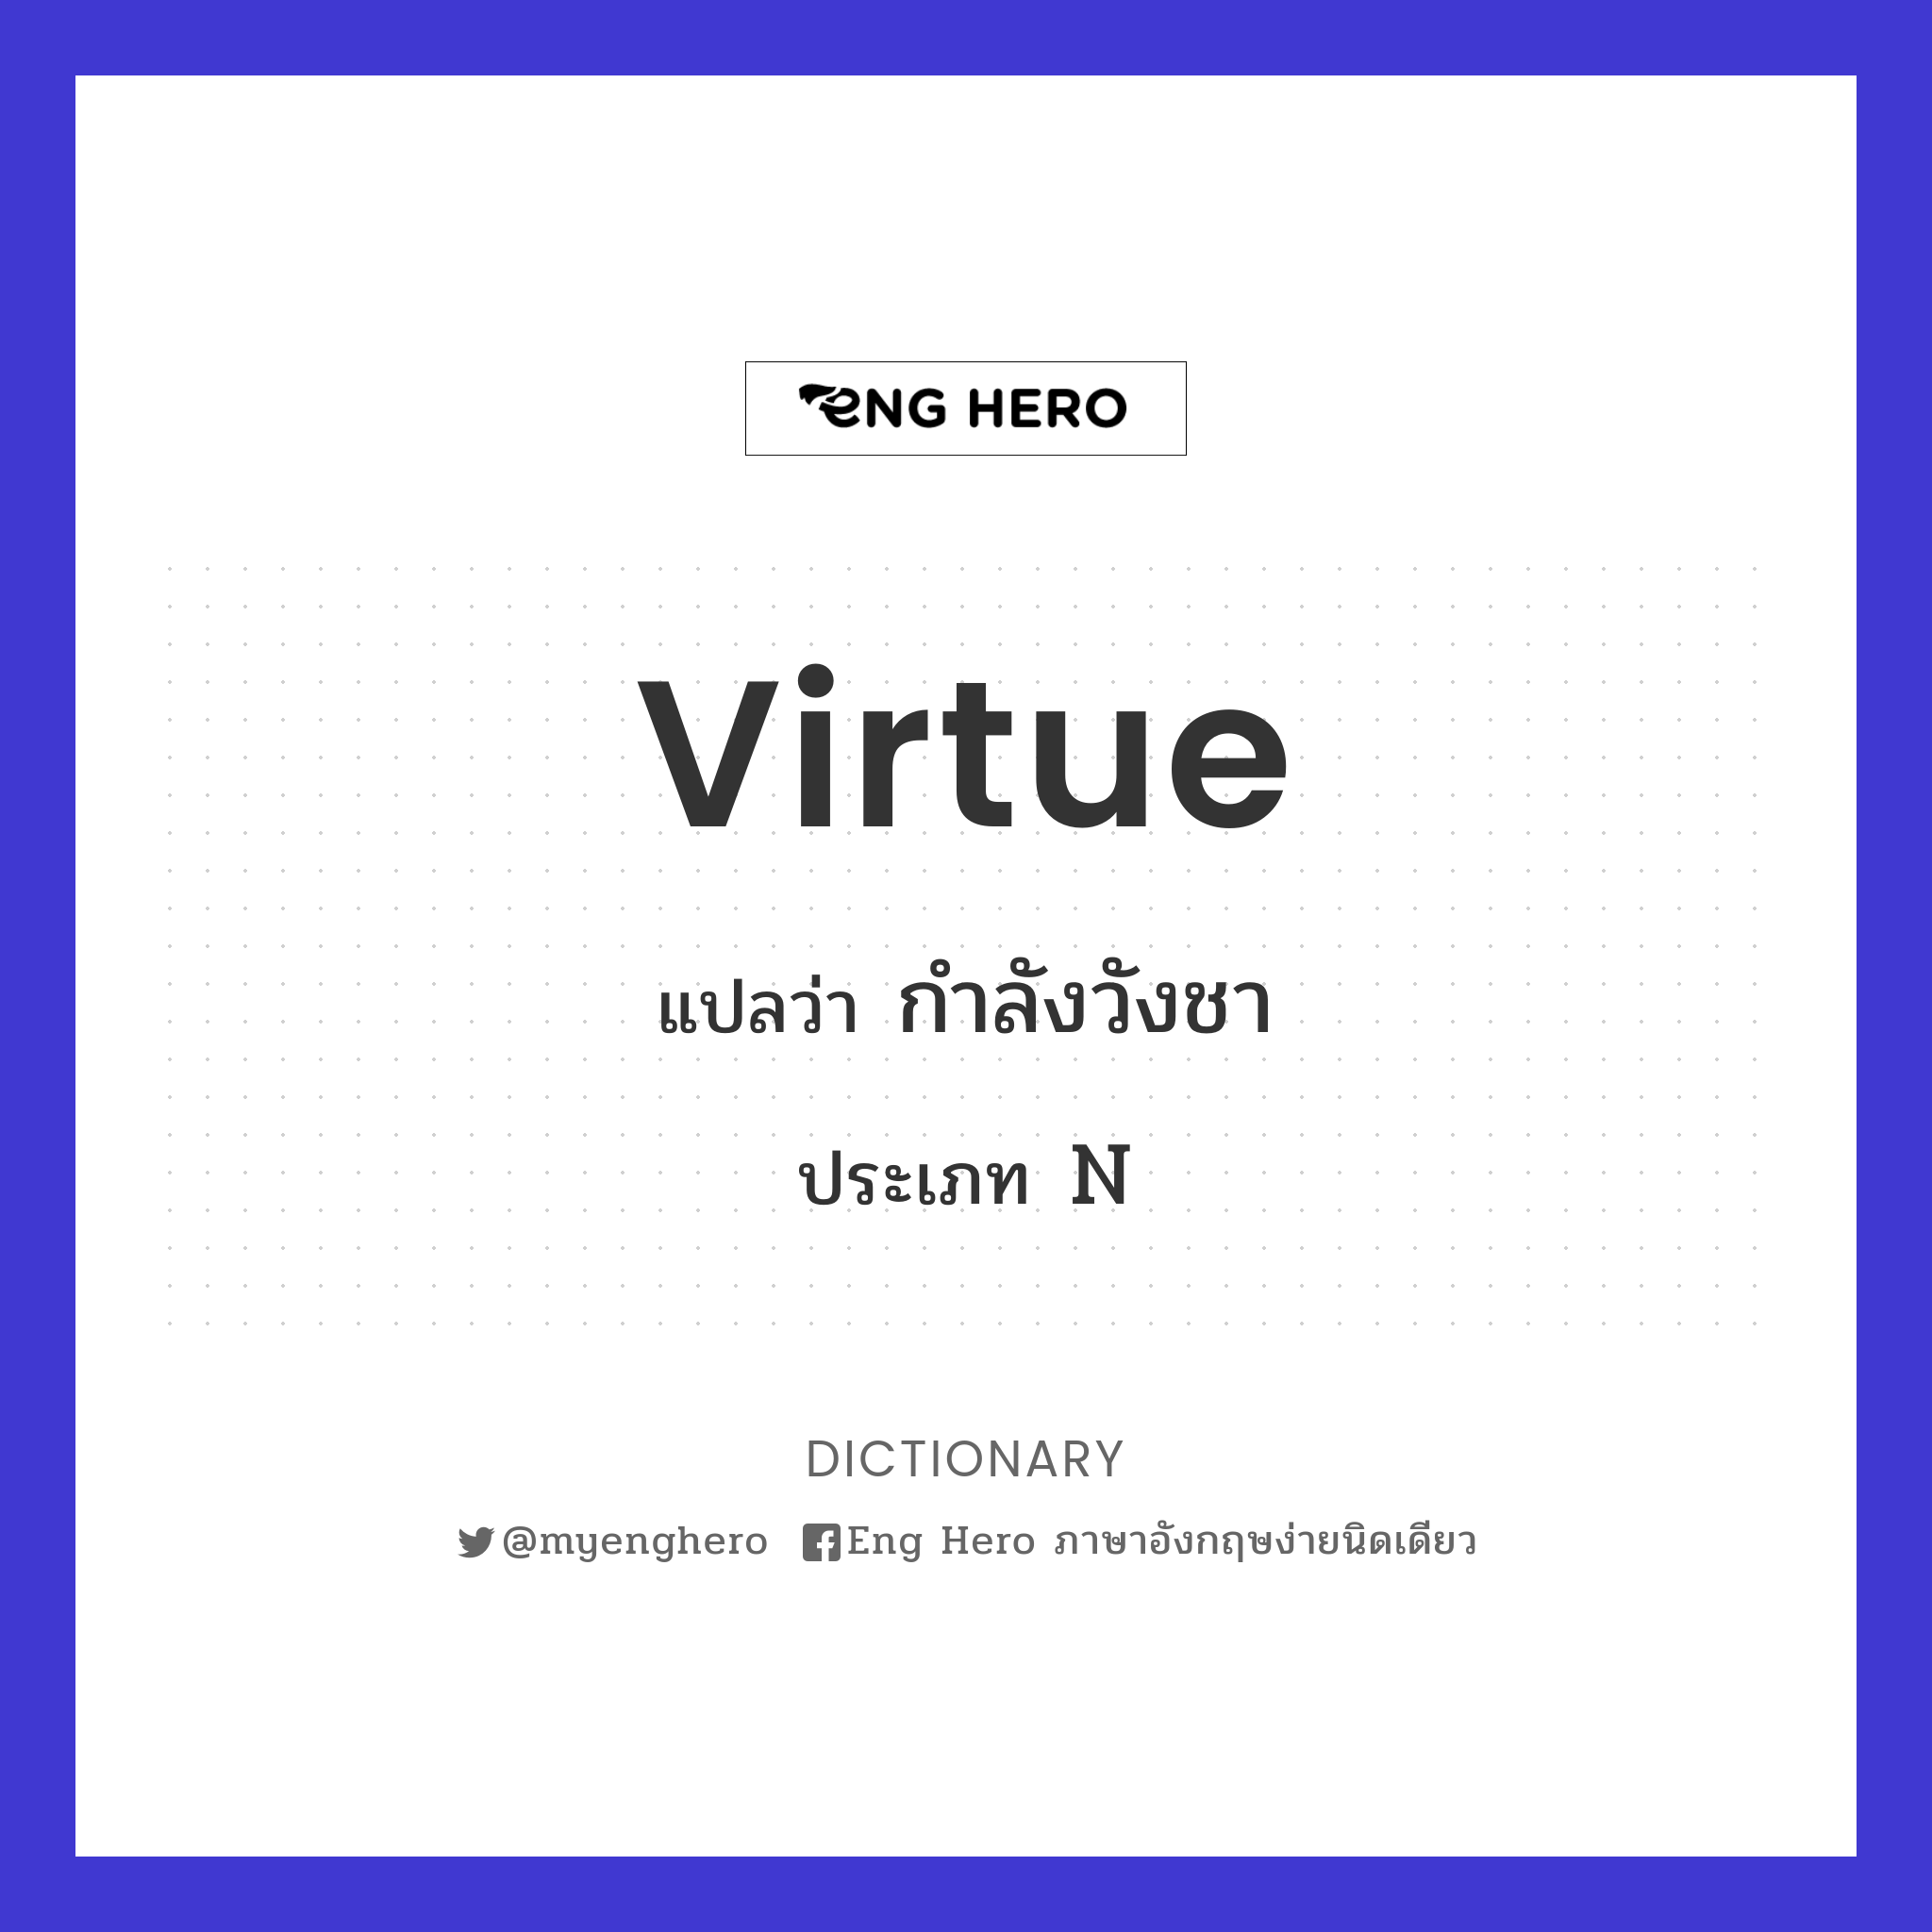 virtue